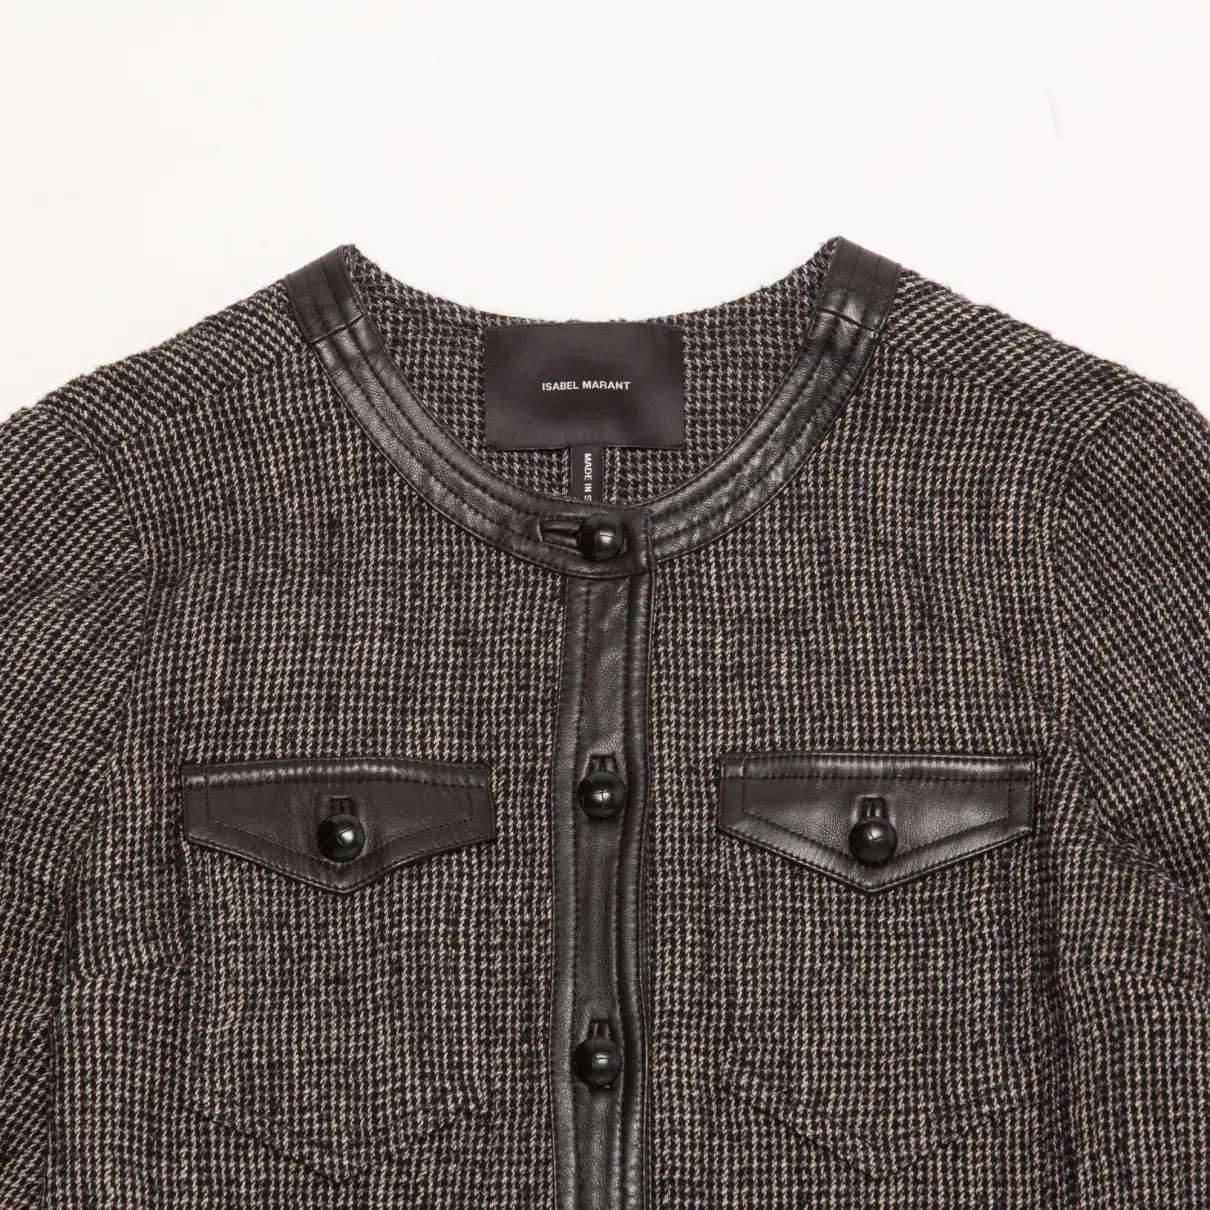 Buy Isabel Marant Wool short vest online